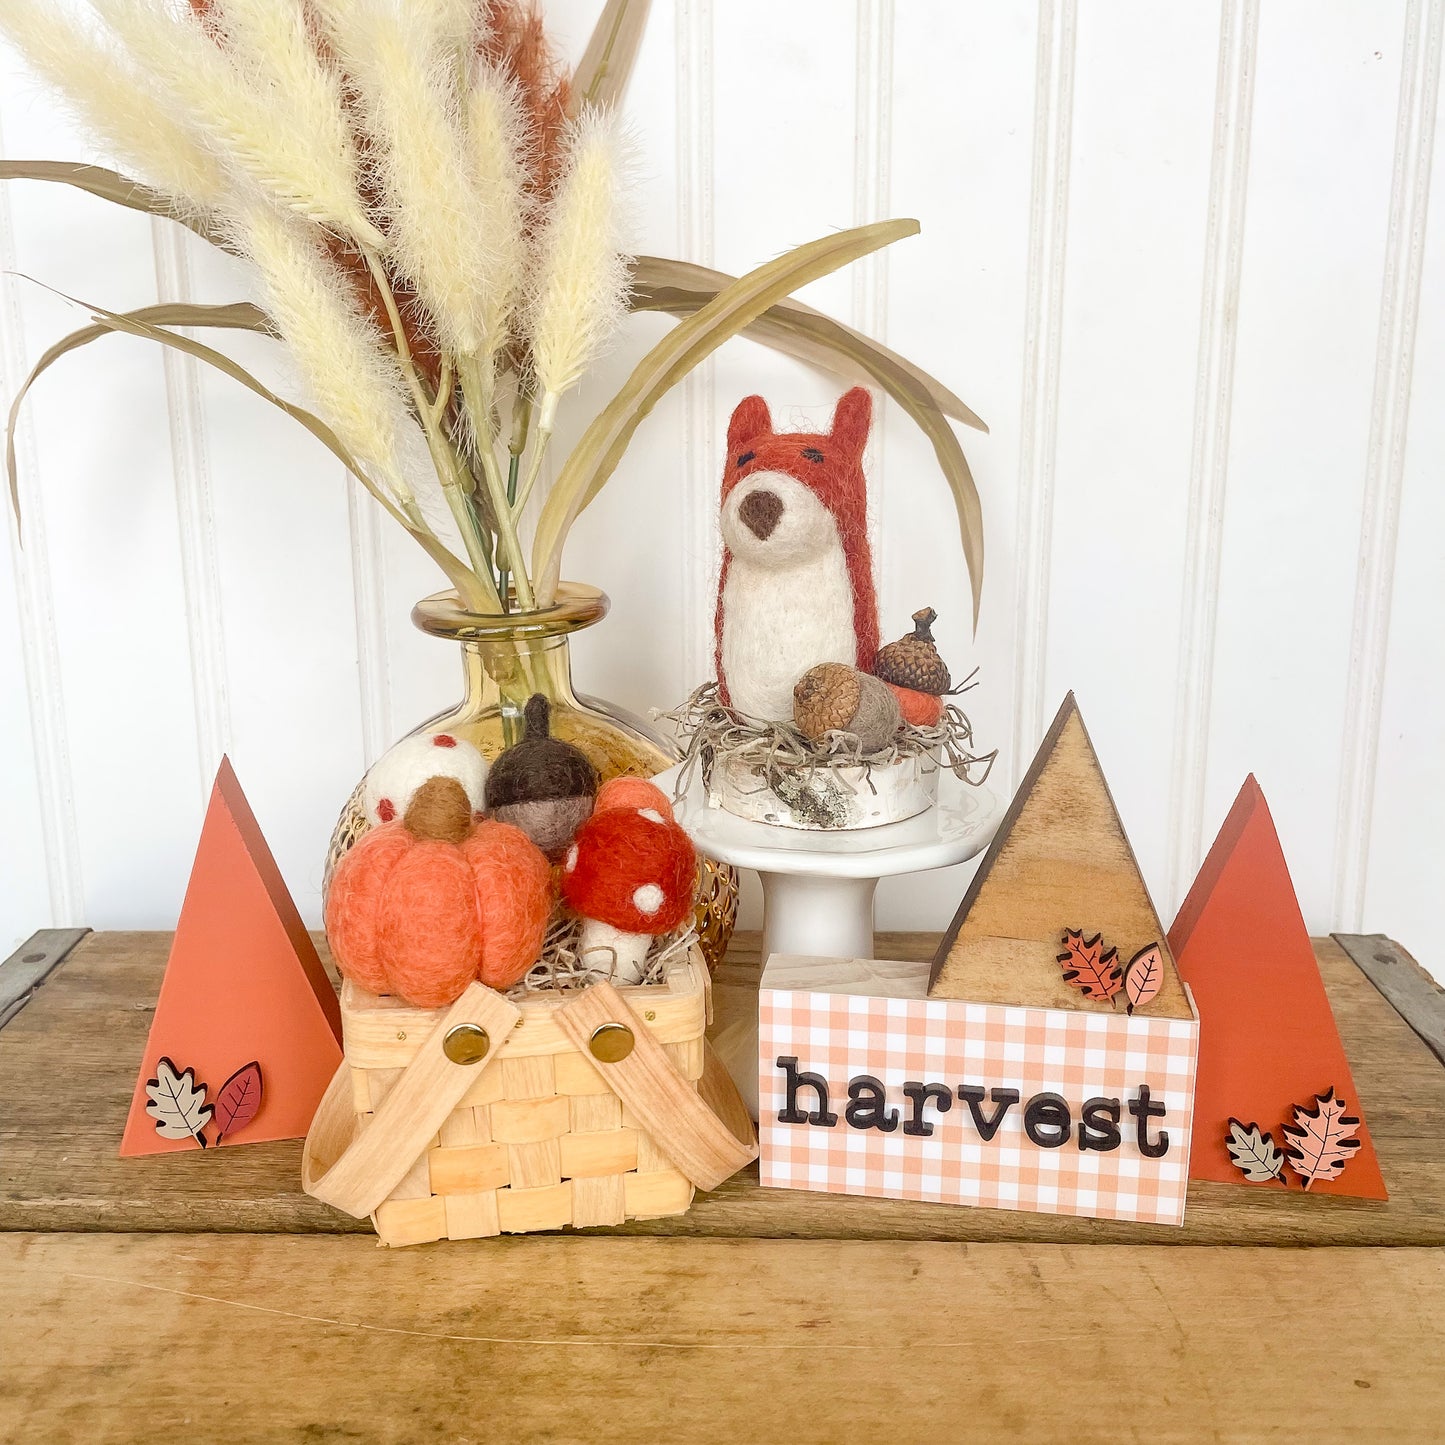 Harvest Basket